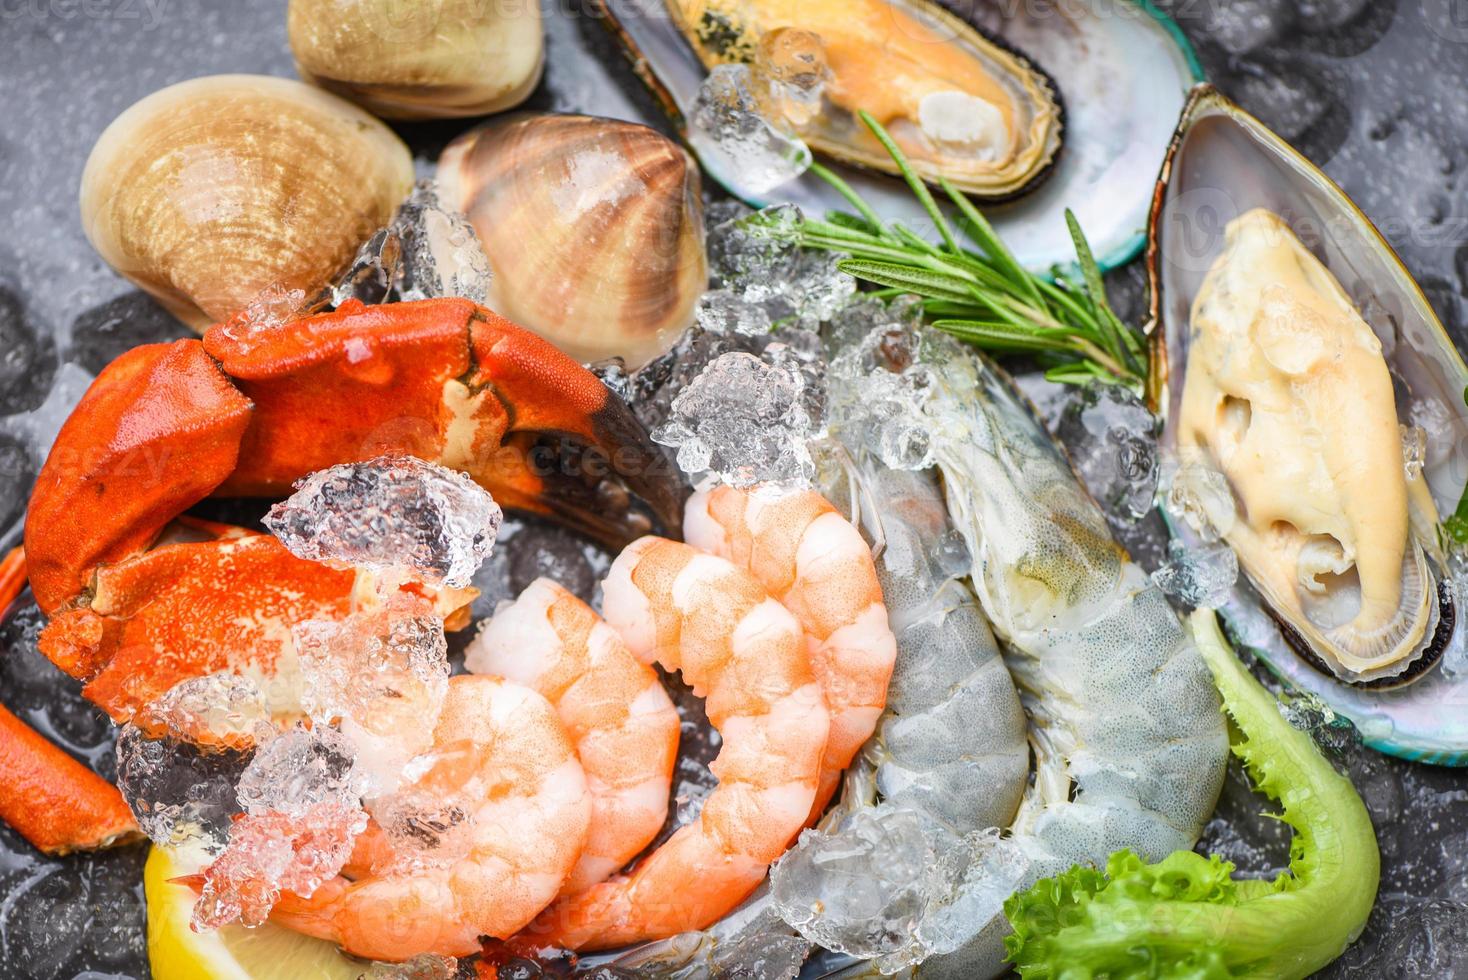 färsk rå skaldjursbuffé med citron rosmarin ingredienser ört och kryddor - skaldjur på is frysta med räkor räkor krabba klor skalmussla och musslor på restaurangen foto